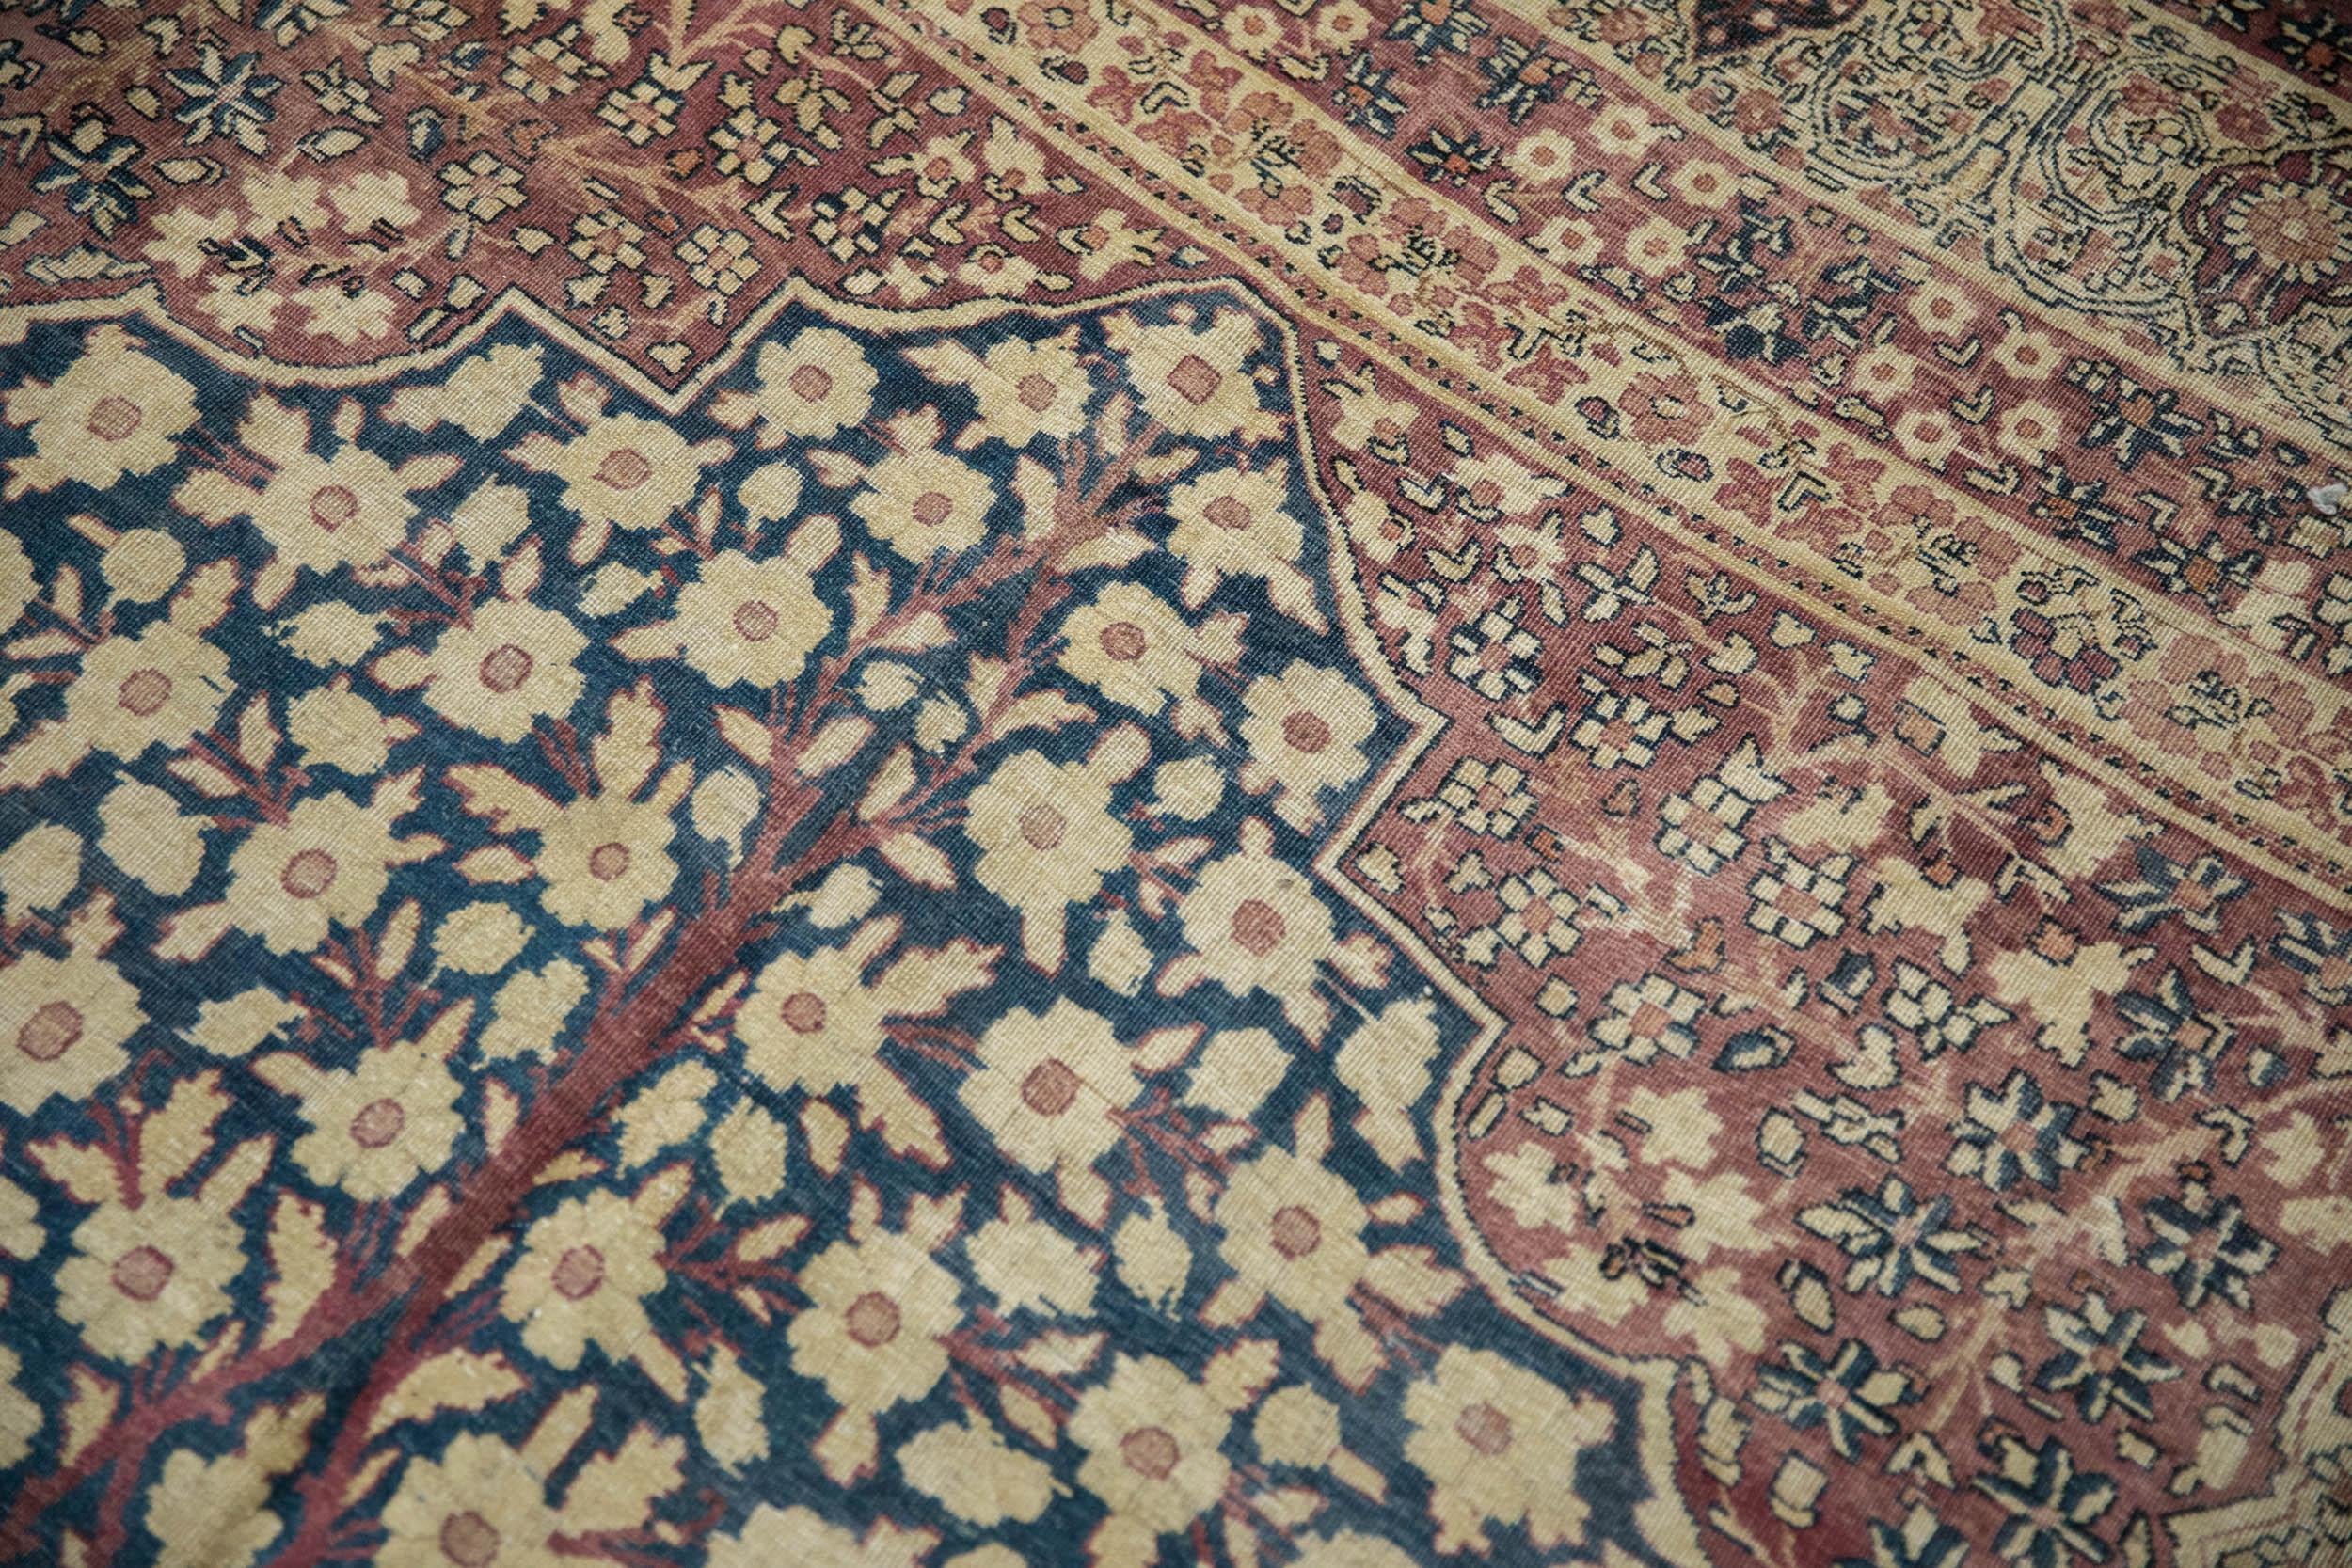 Other Antique Kermanshah Carpet For Sale